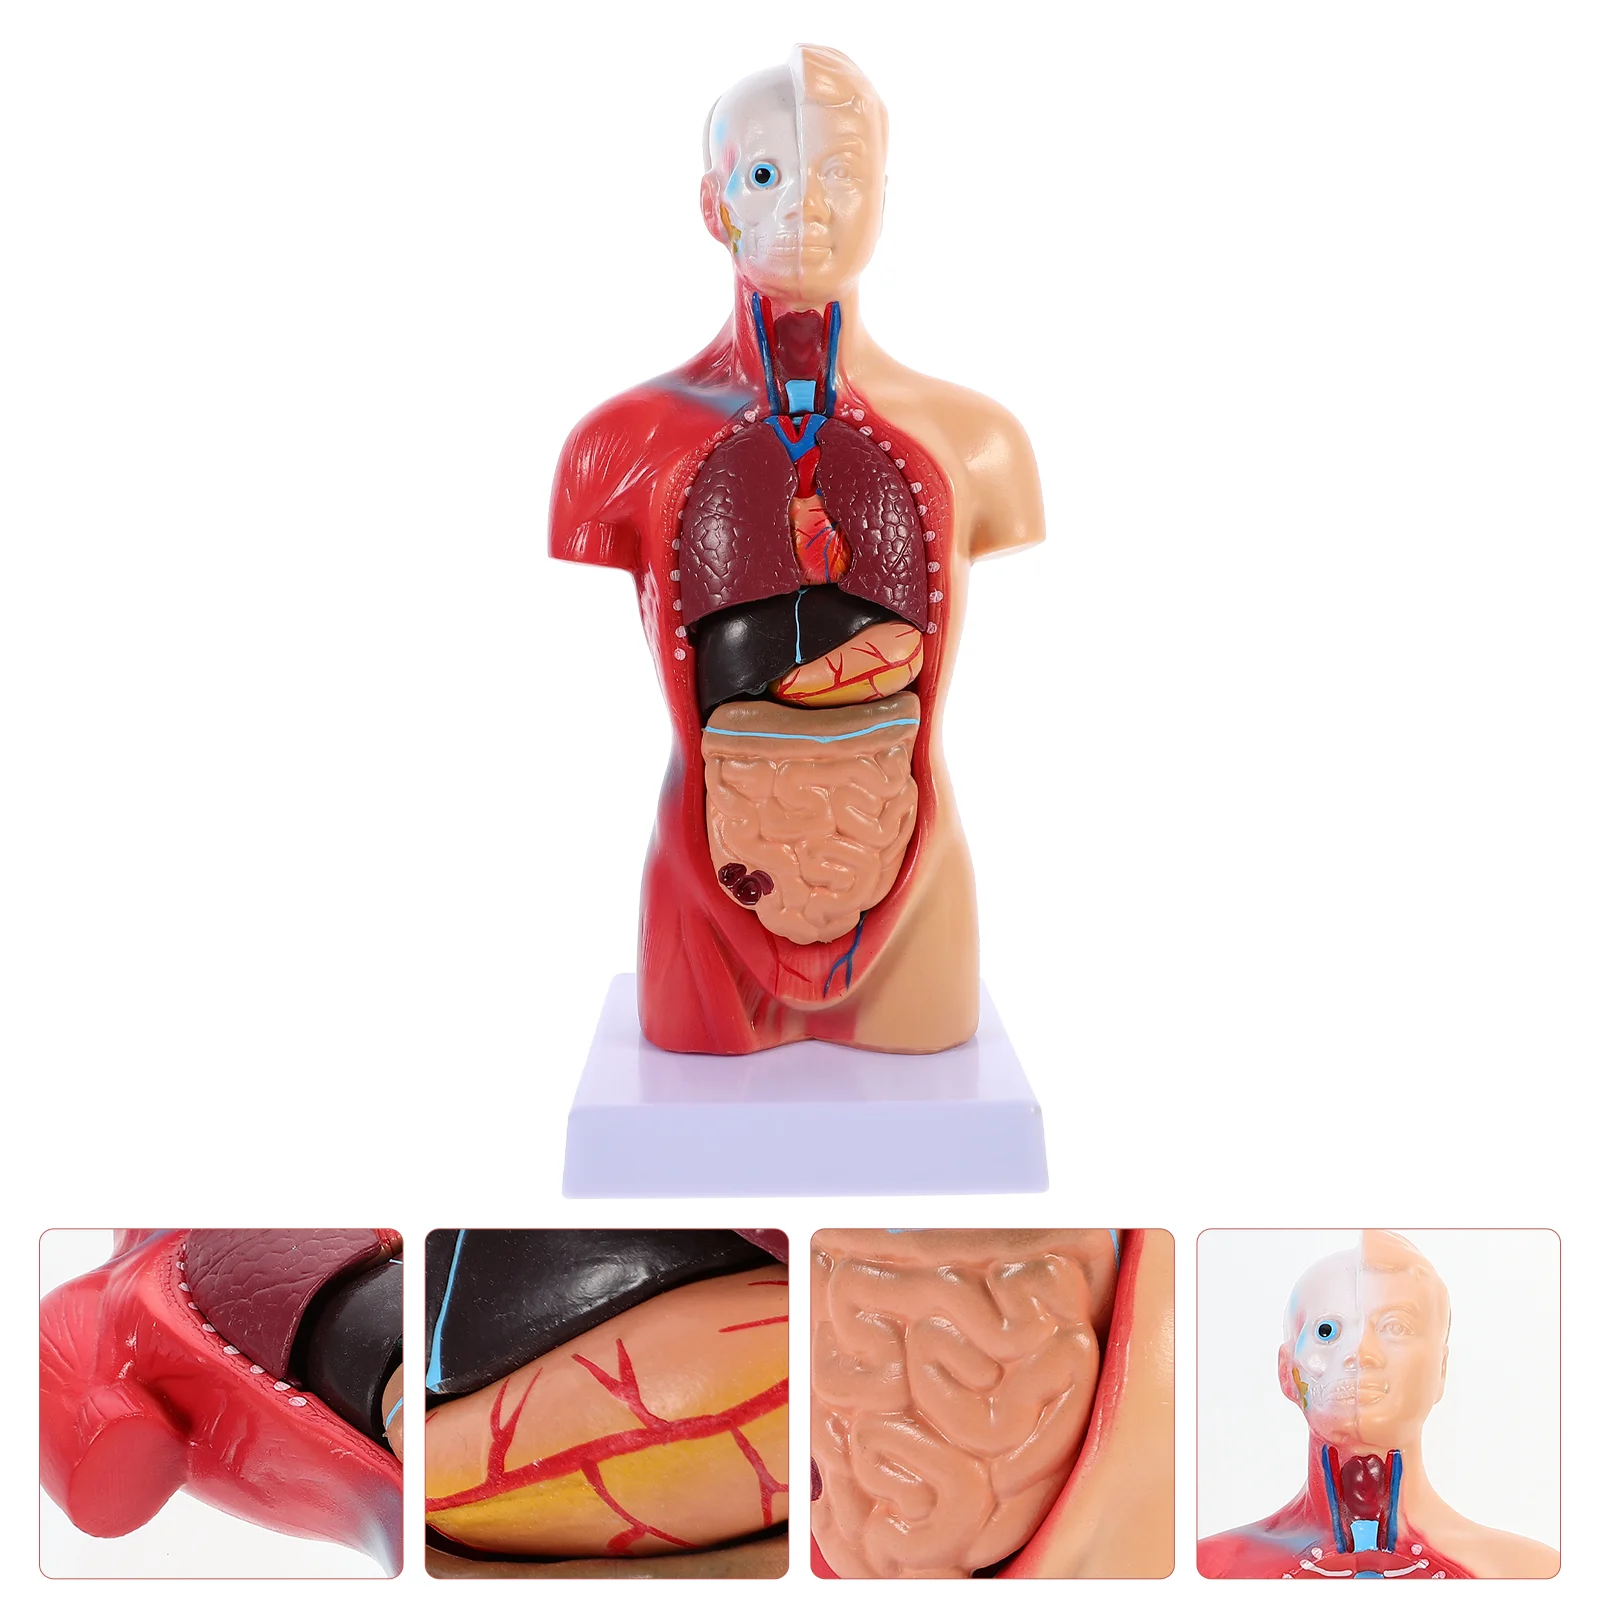 

Манекен, анатомическая модель торса, манекены, пазл, обучающая анатомия, ПВХ человеческие органы, обучение инъекциям ребенка